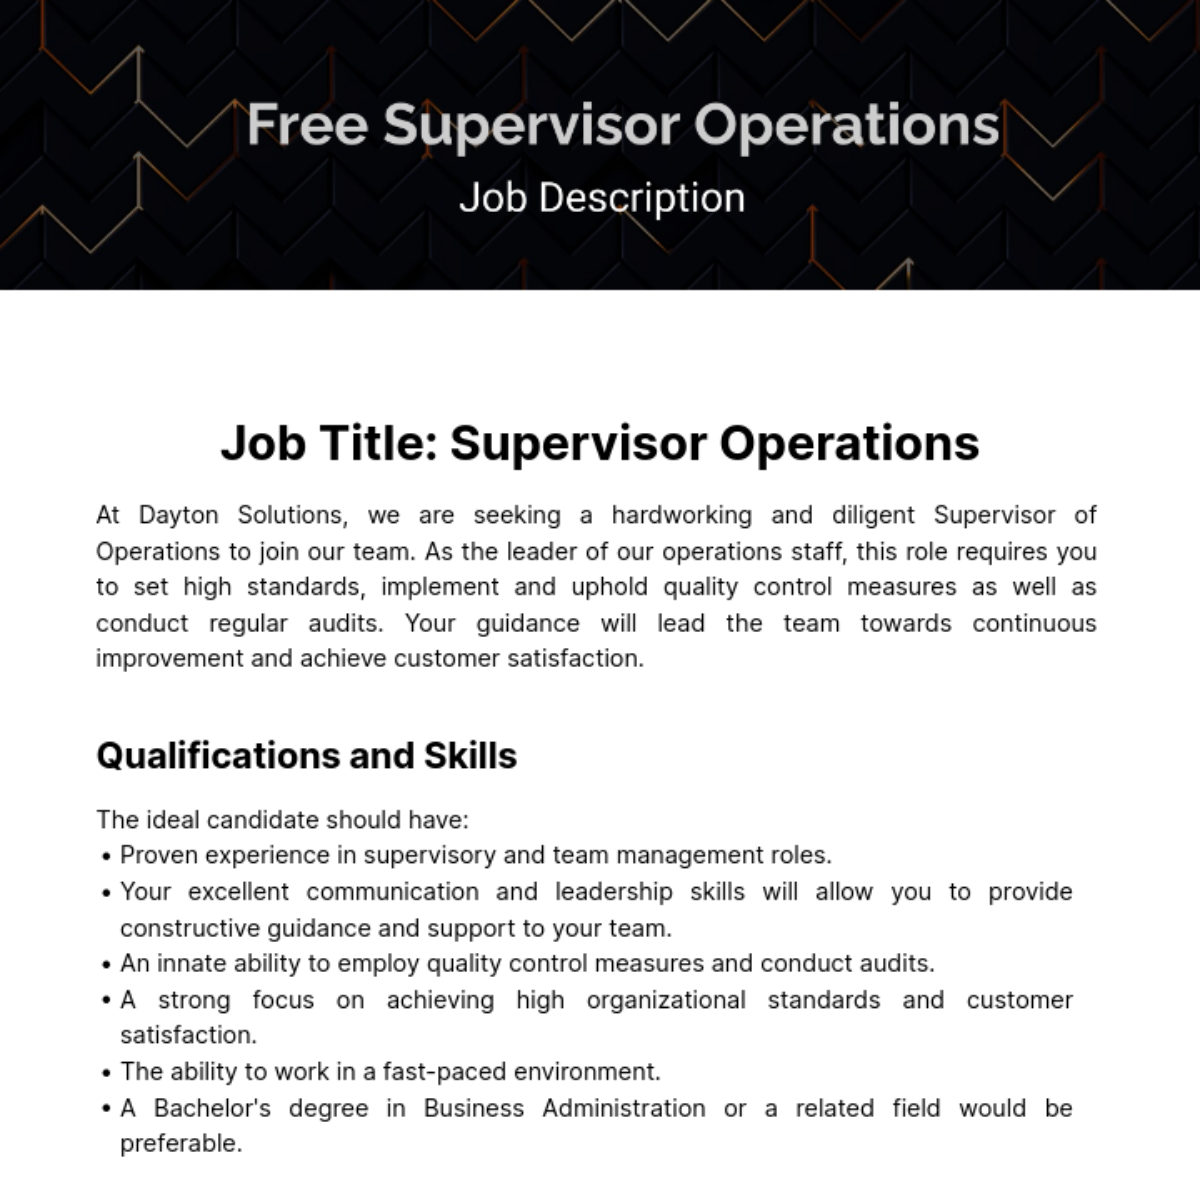 Supervisor Operations Job Description Template